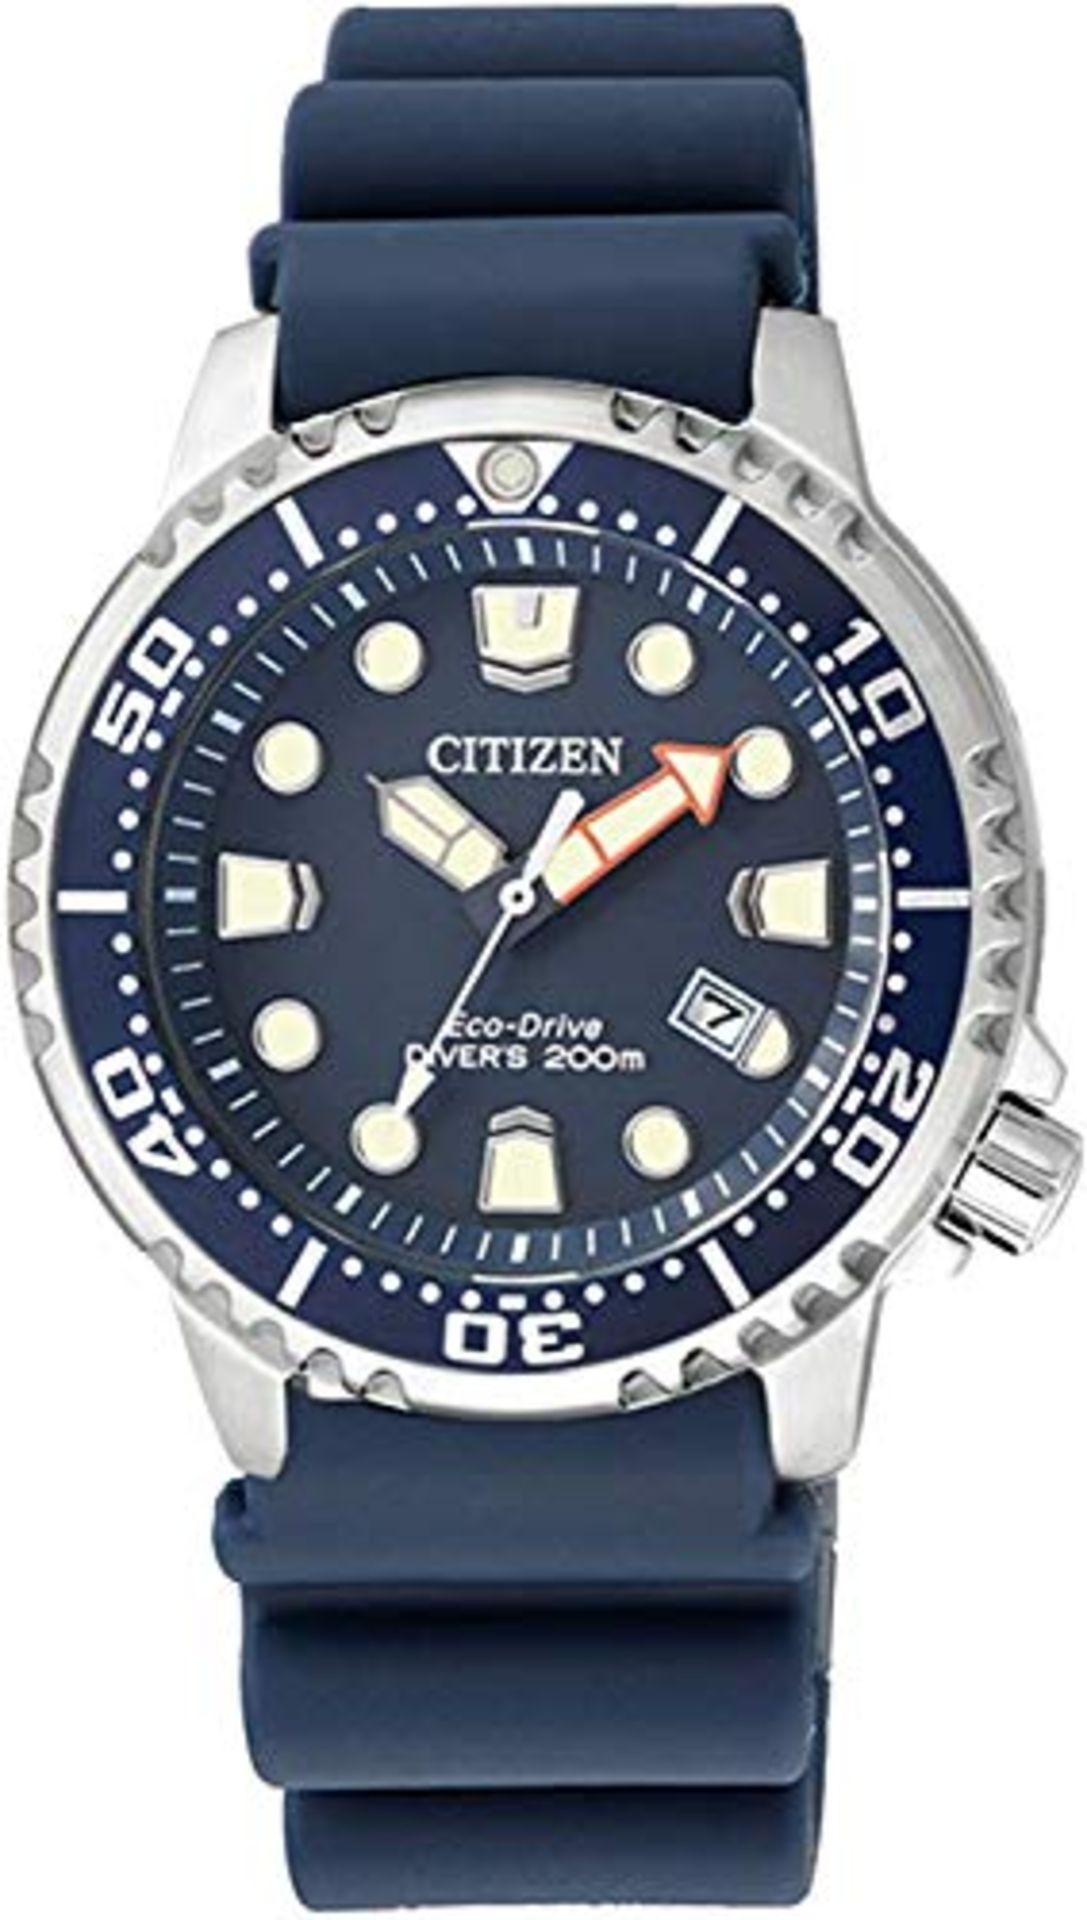 RRP £175.00 Citizen Men's Analog Quartz Watch with Rubber Strap EP6051-14L, Blue